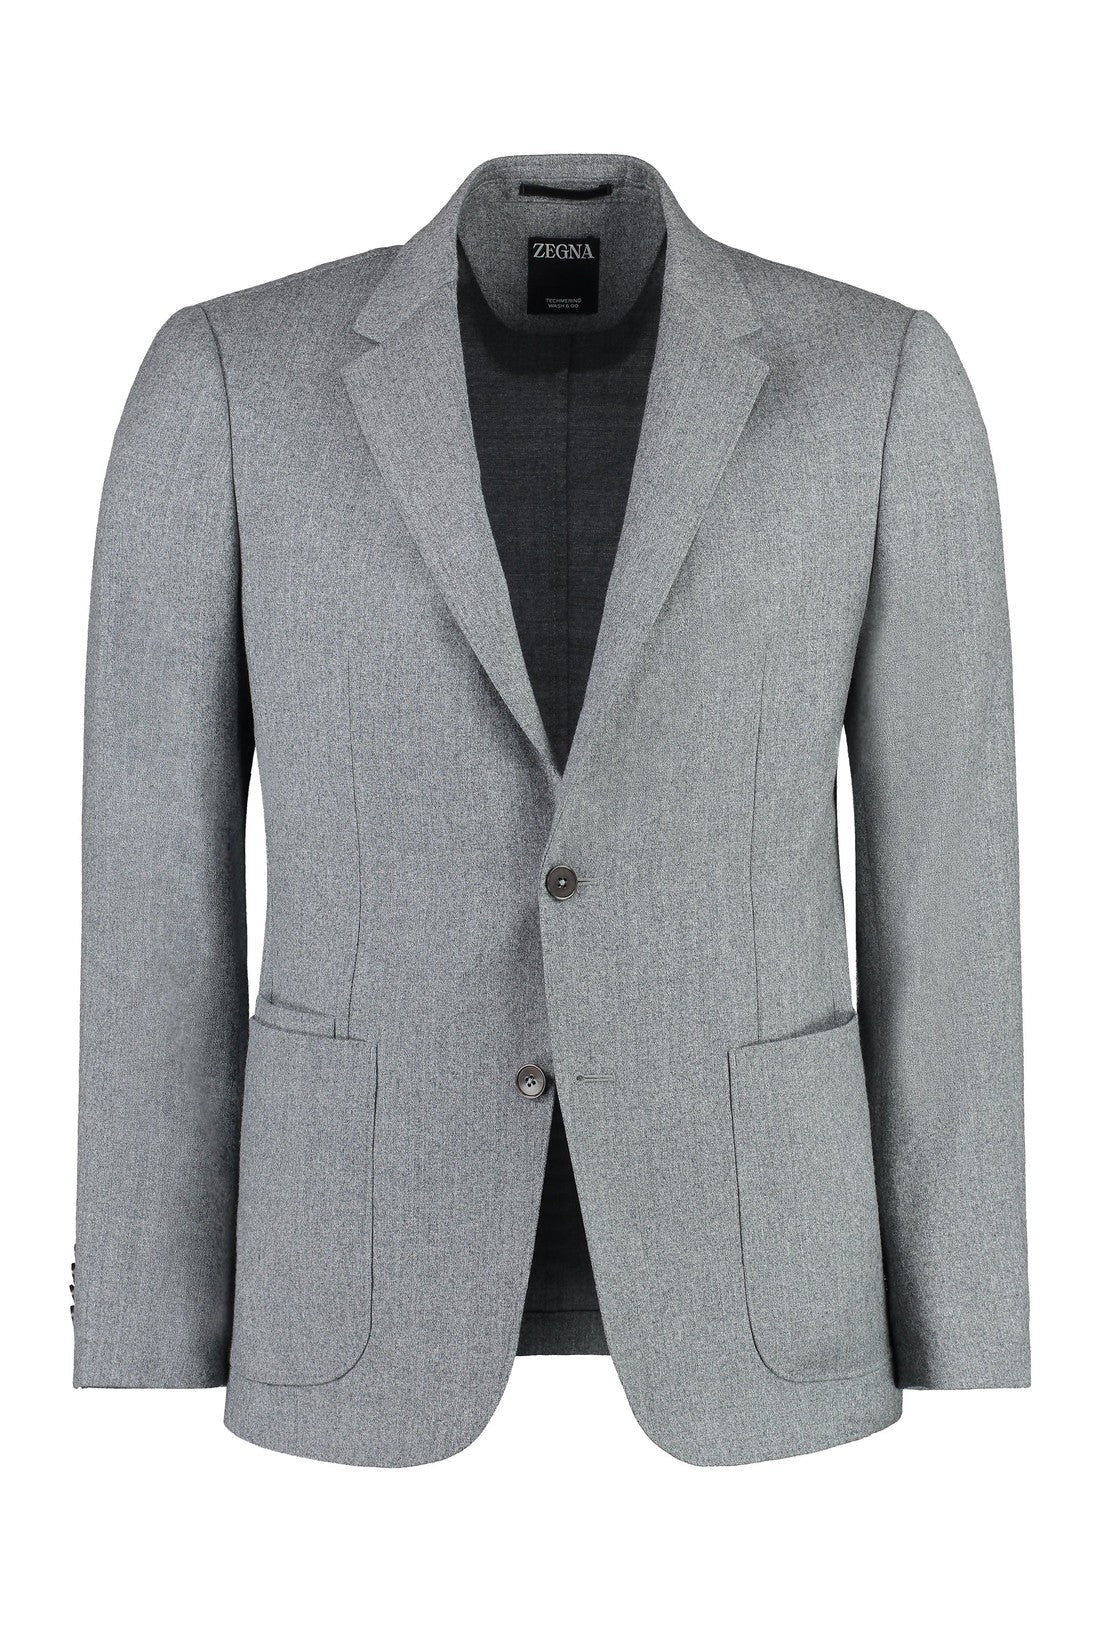 Zegna-OUTLET-SALE-Two-piece wool suit-ARCHIVIST